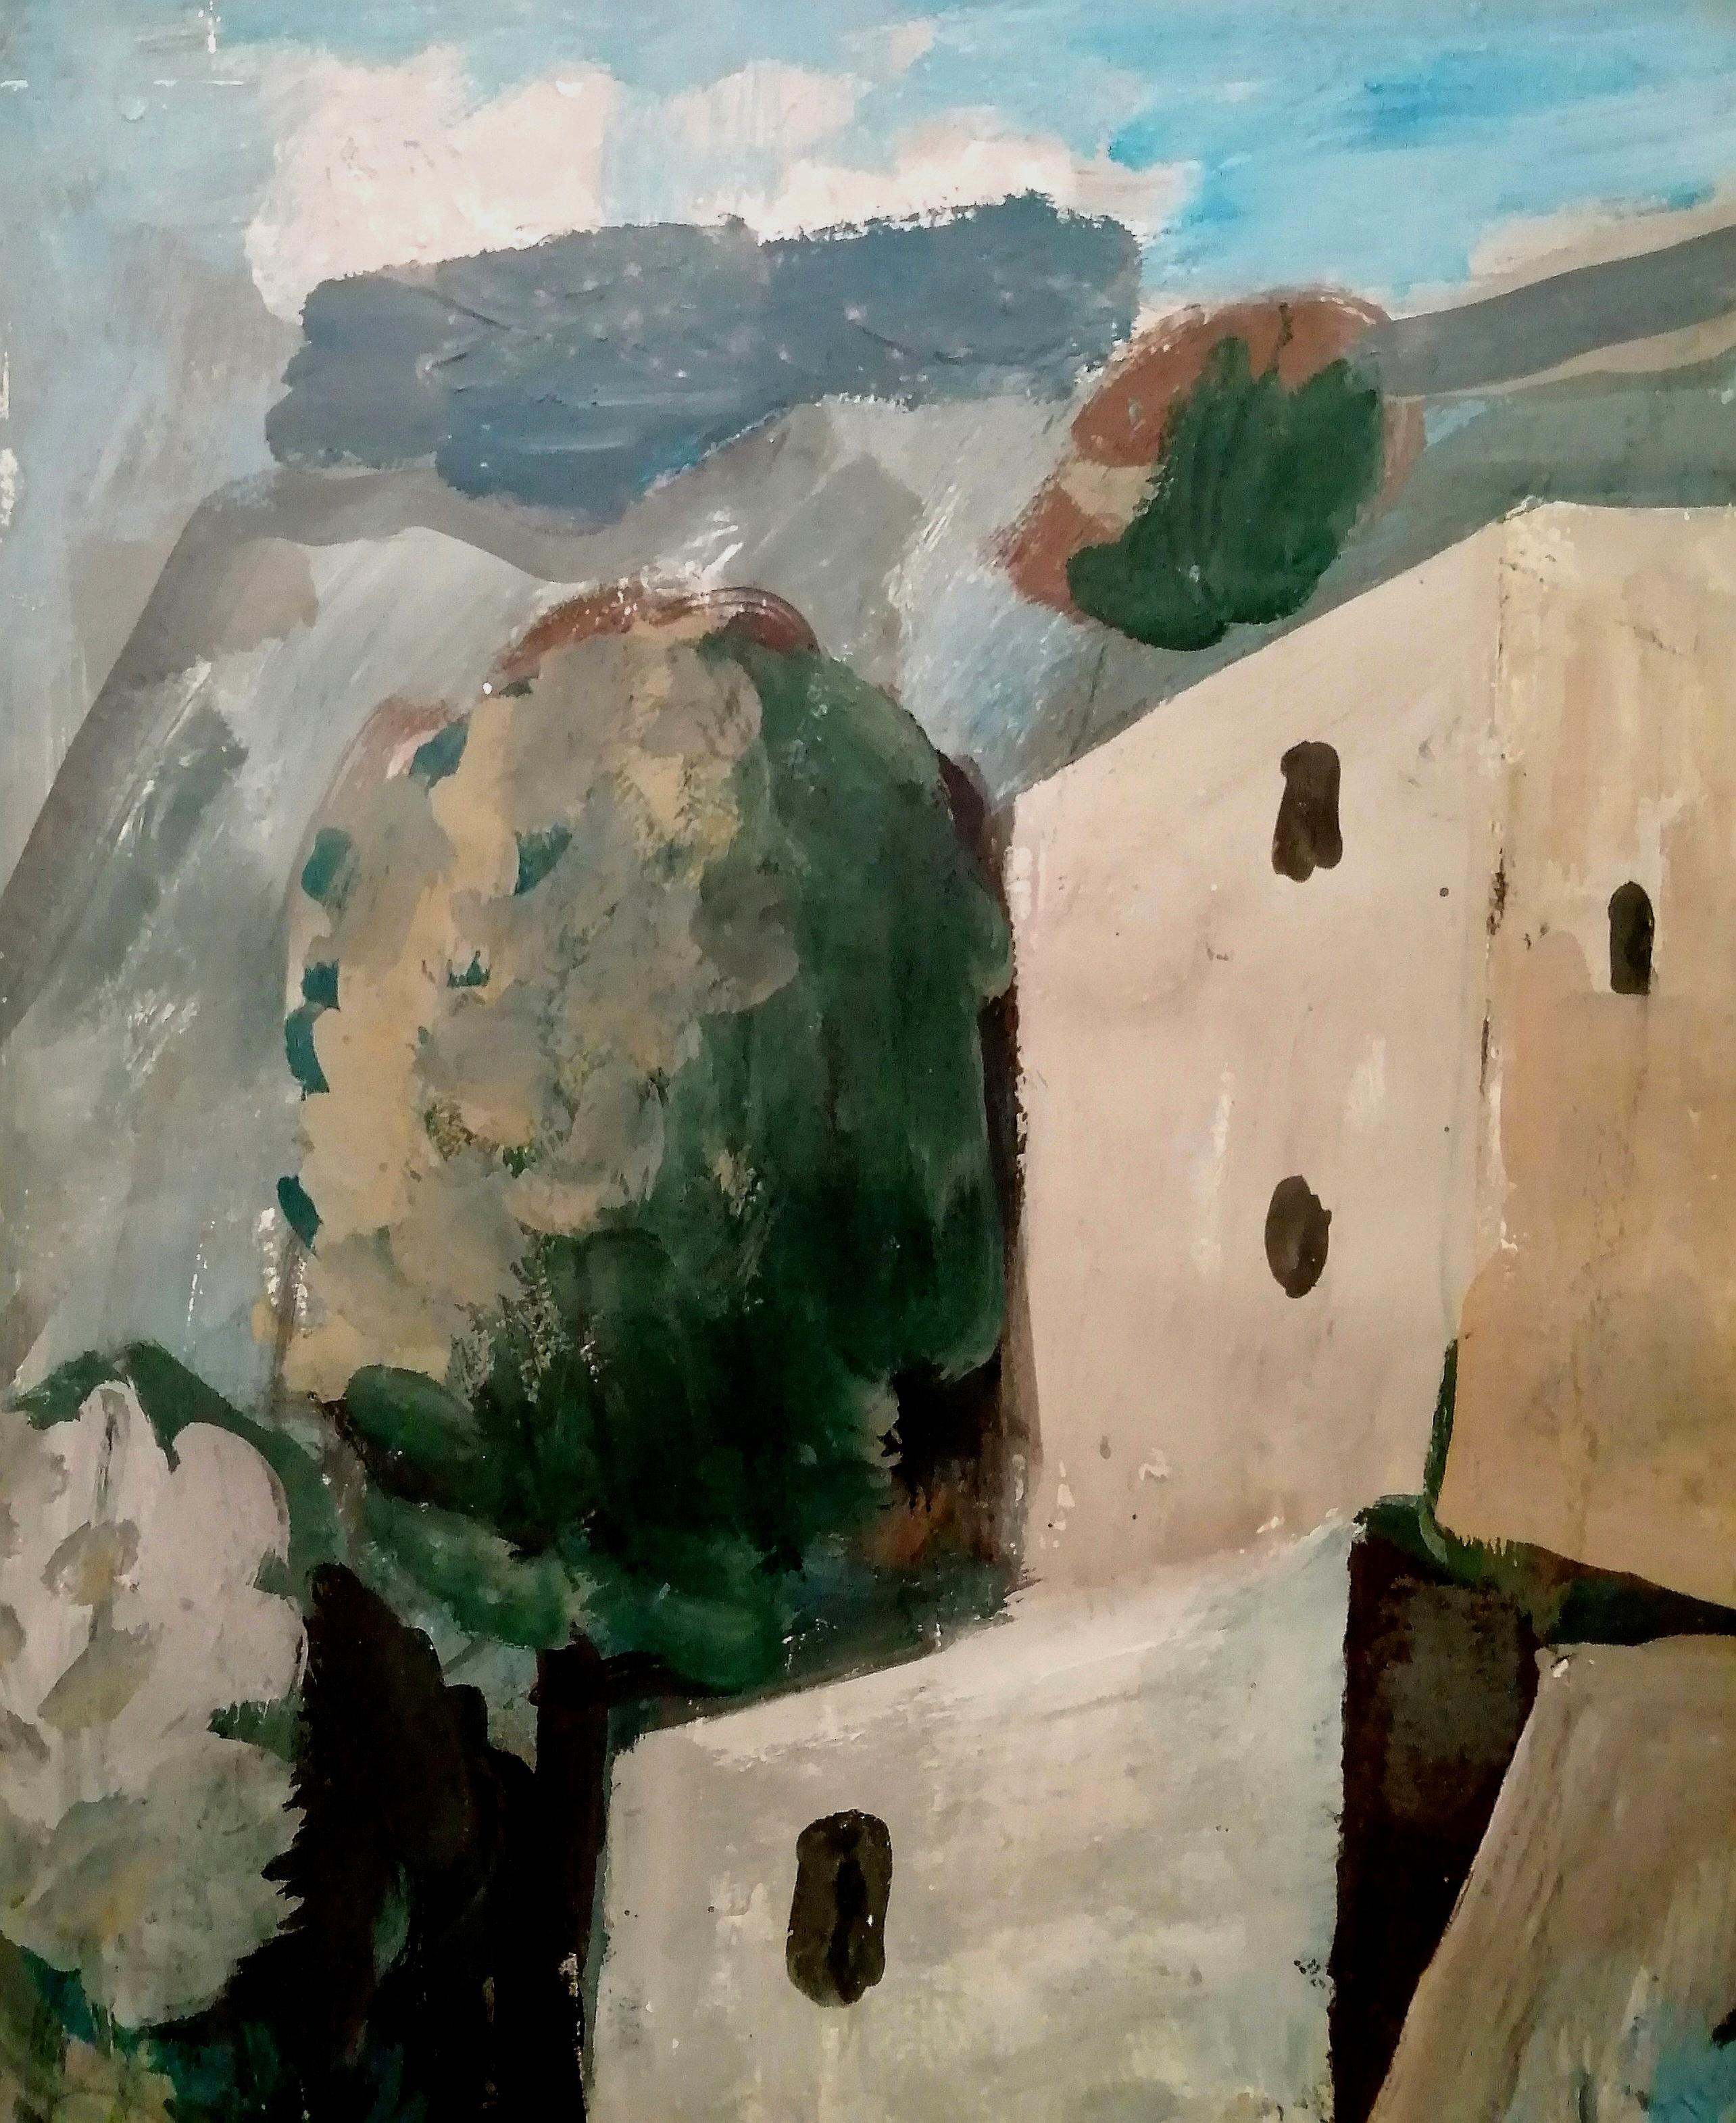 Un beau grand paysage français d'influence cubiste, datant de 1960, réalisé par Oleg Zinger à l'huile sur papier et sur carton. L'œuvre représente un paysage d'été avec des bâtiments blancs et des arbres verts - le lieu est certainement le sud de la